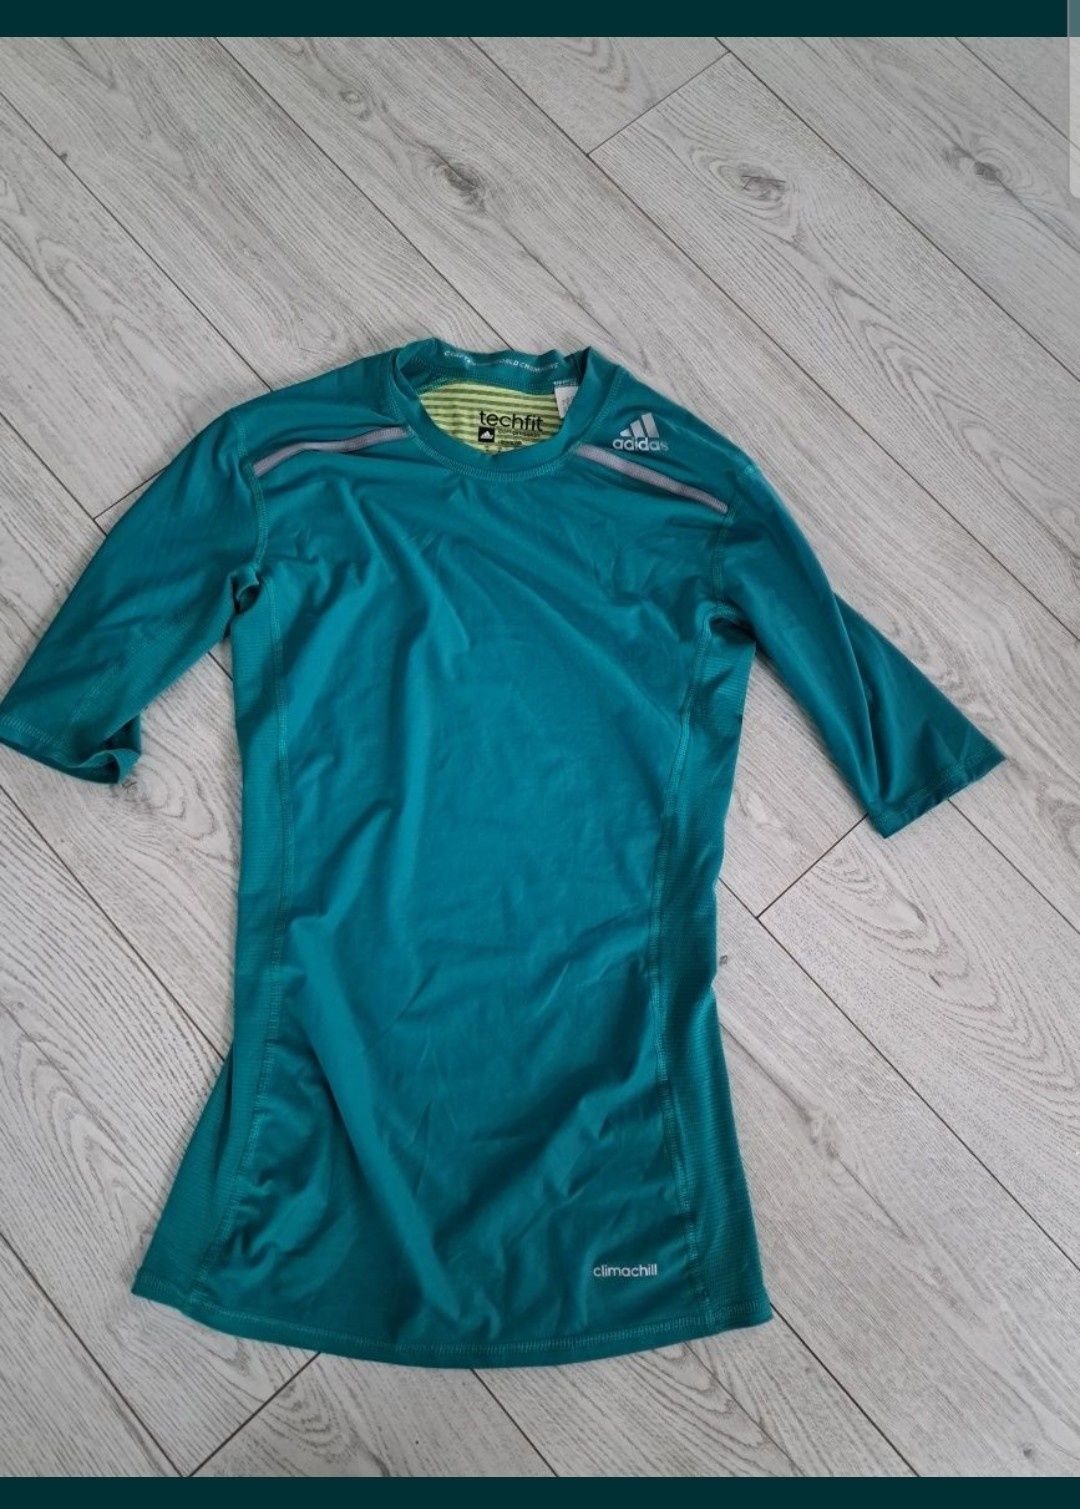 Bluzka zielona  tunika sportowa techfit s 36 adidas climachill